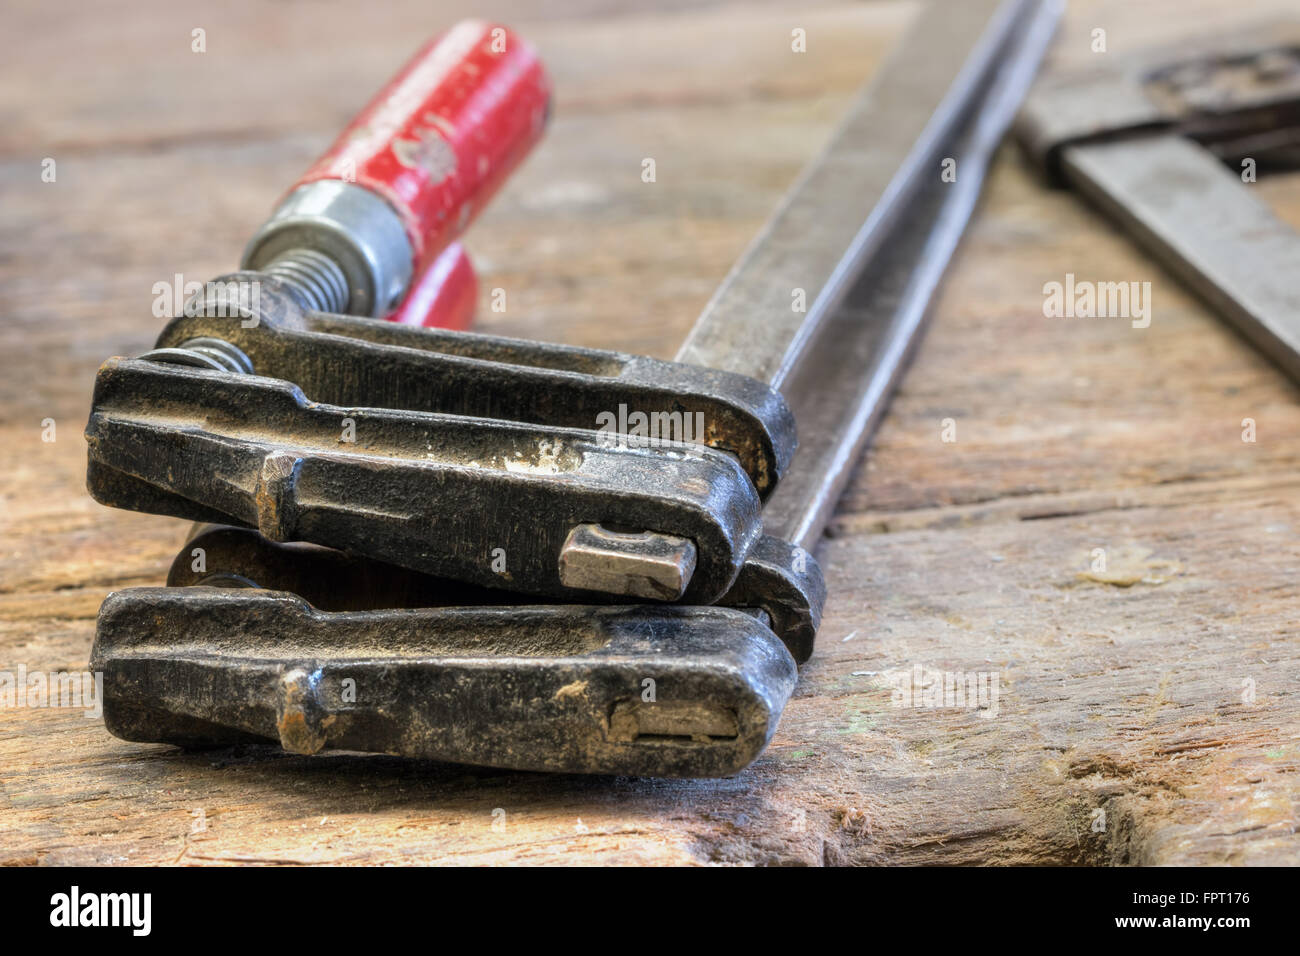 Outils de serrage - outils de menuiserie - Outil de serrage Photo Stock -  Alamy